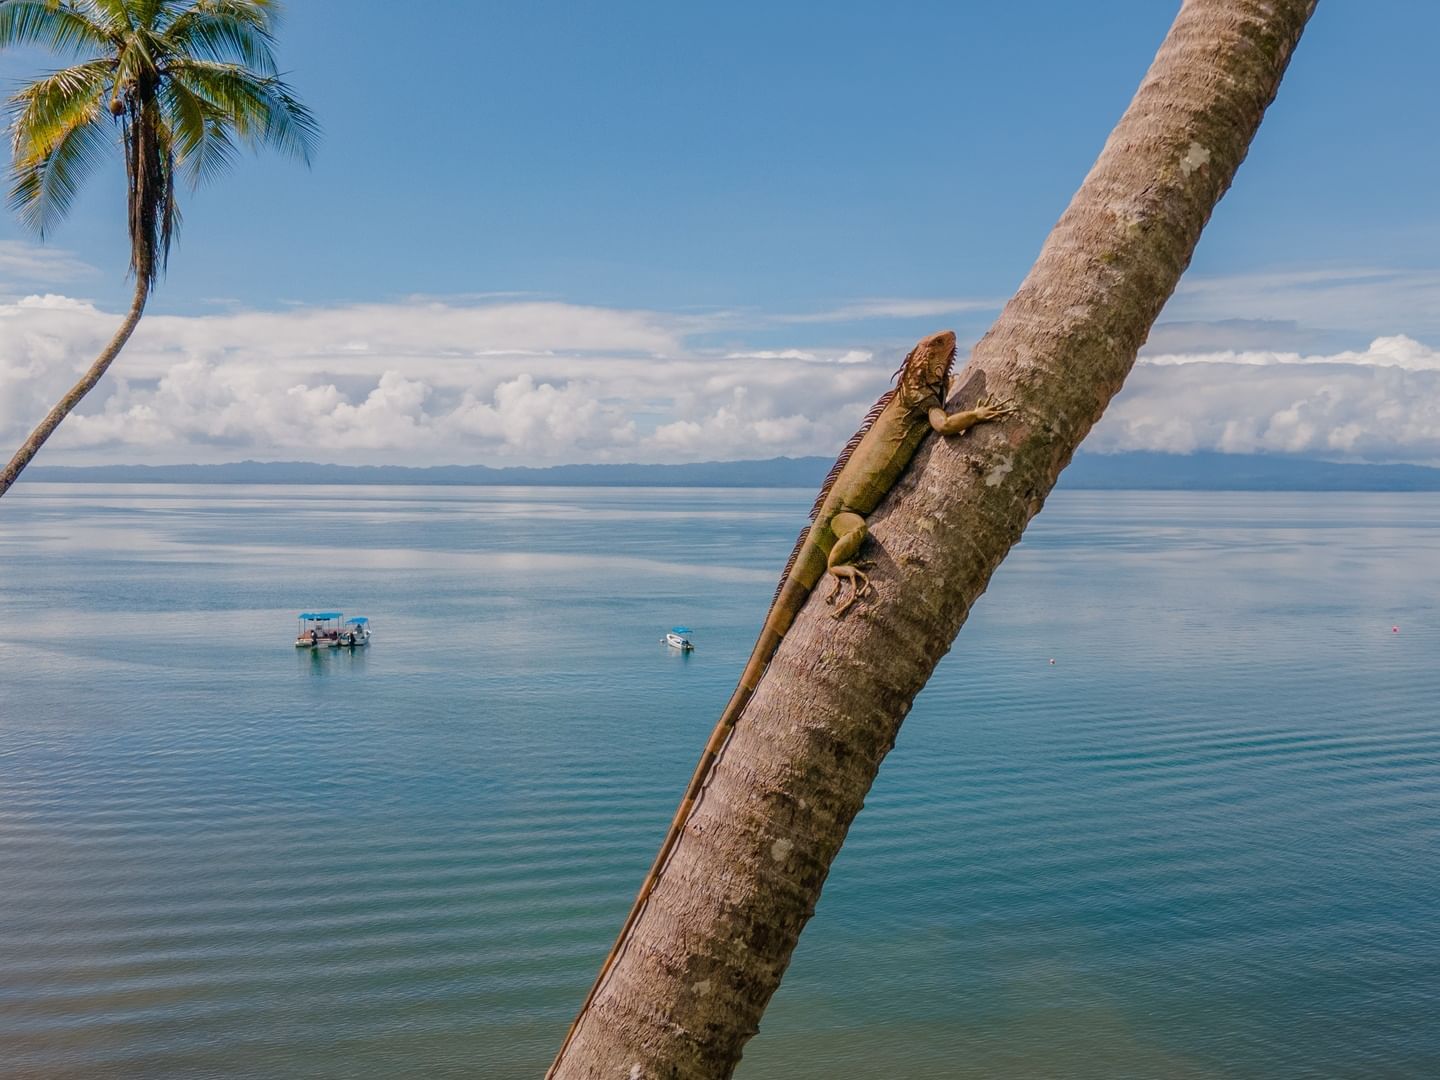 Green Iguana on coconut tree near Playa Cativo Lodge